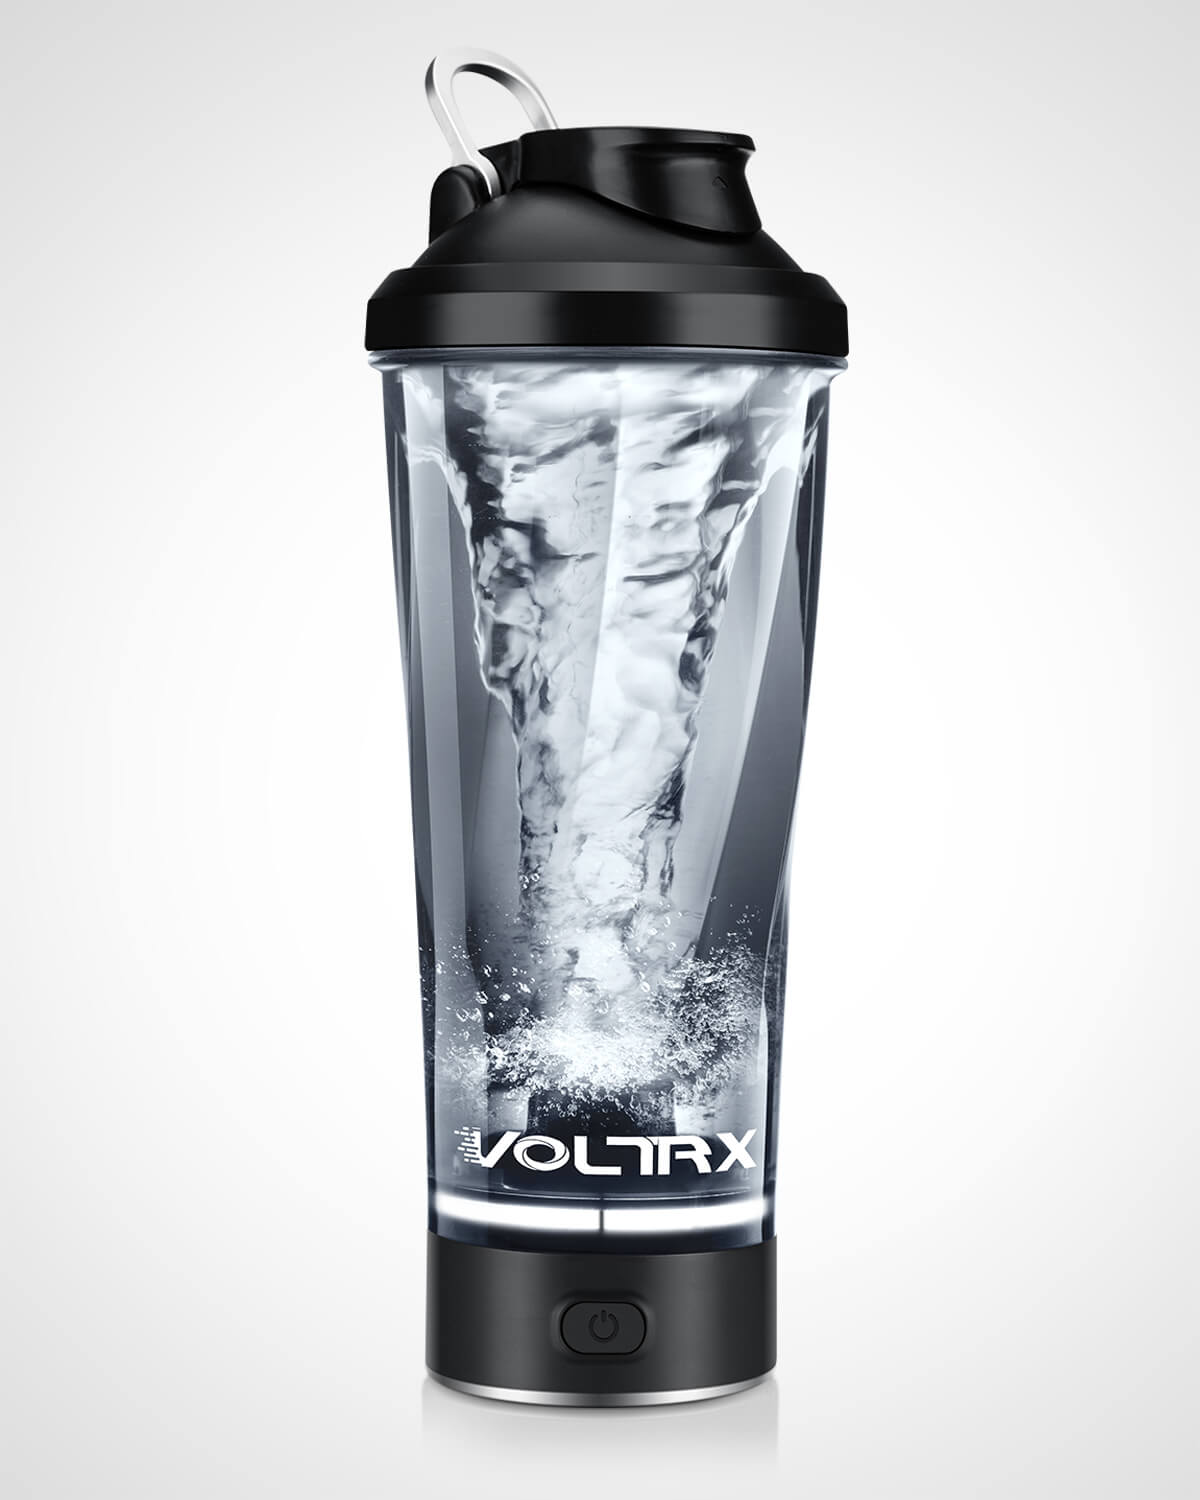 VOLTRX Vortex Electric Protein Shaker Bottle (Black)